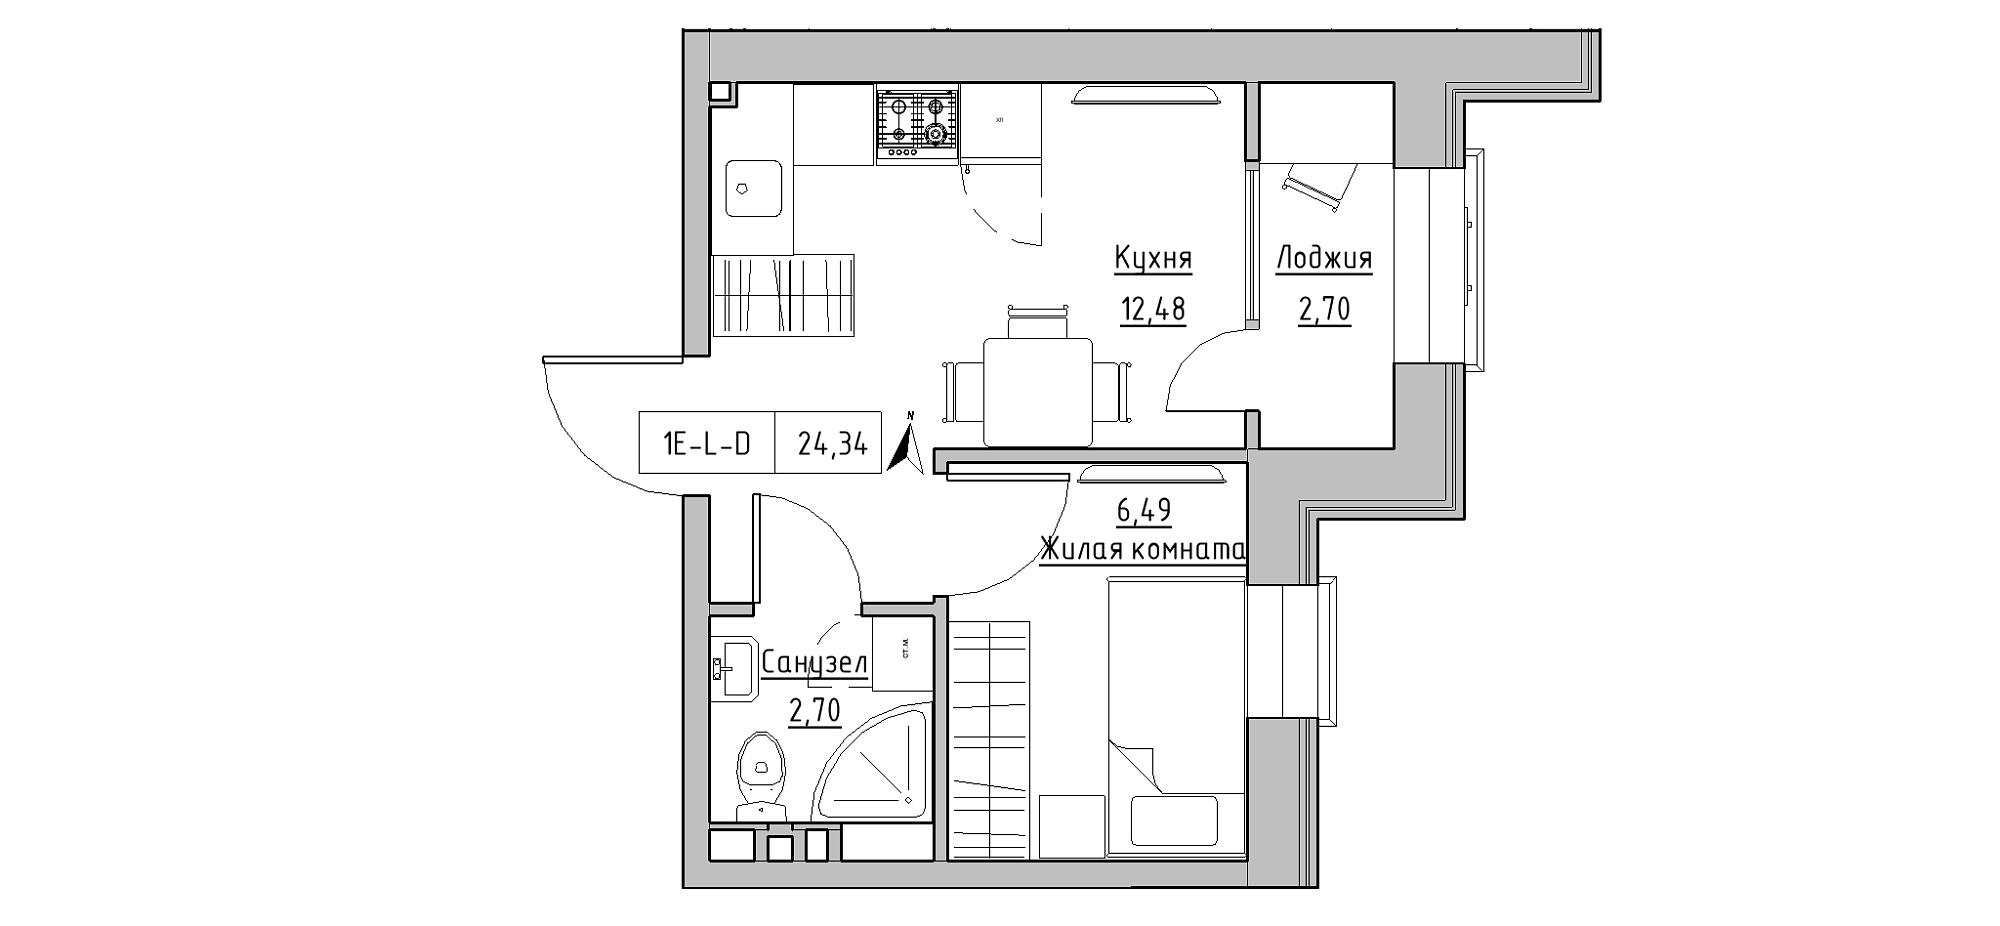 Планування 1-к квартира площею 24.34м2, KS-020-01/0015.